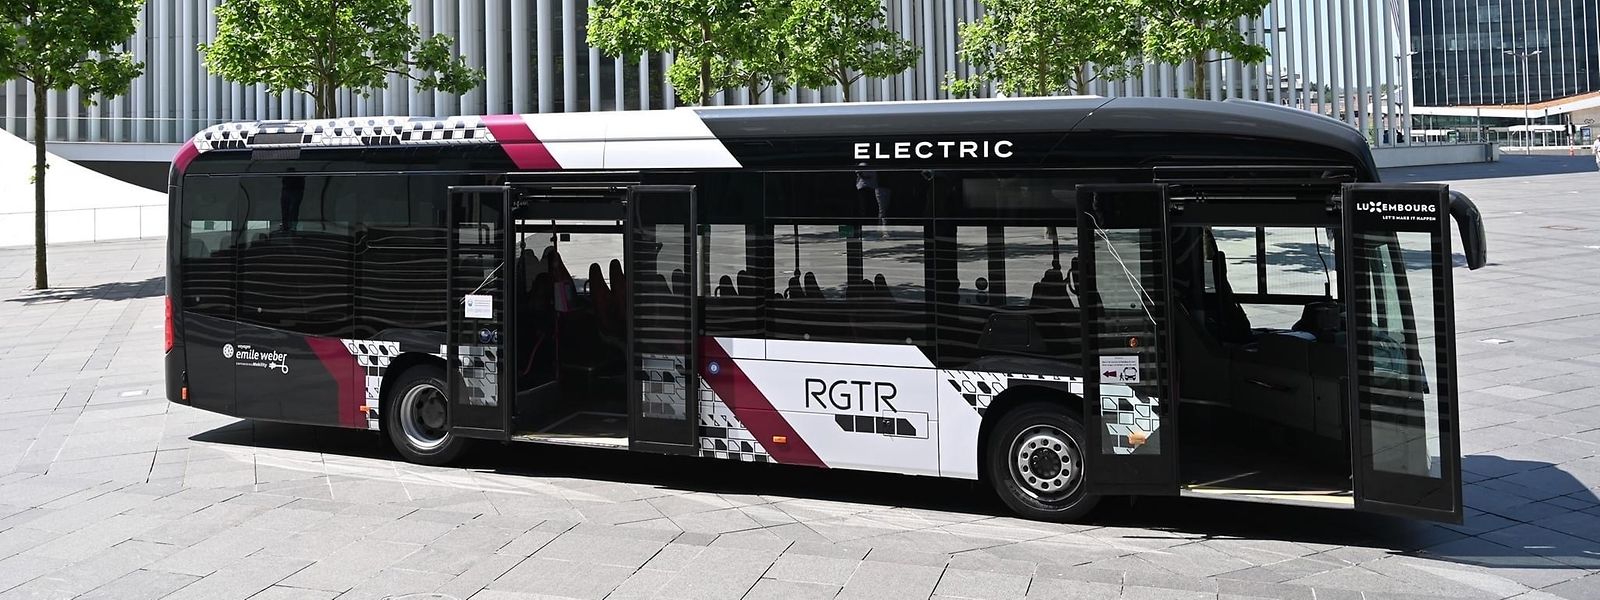 La flotte de bus électriques du réseau RGTR devrait se composer de 500 bus d'ici fin 2023. 